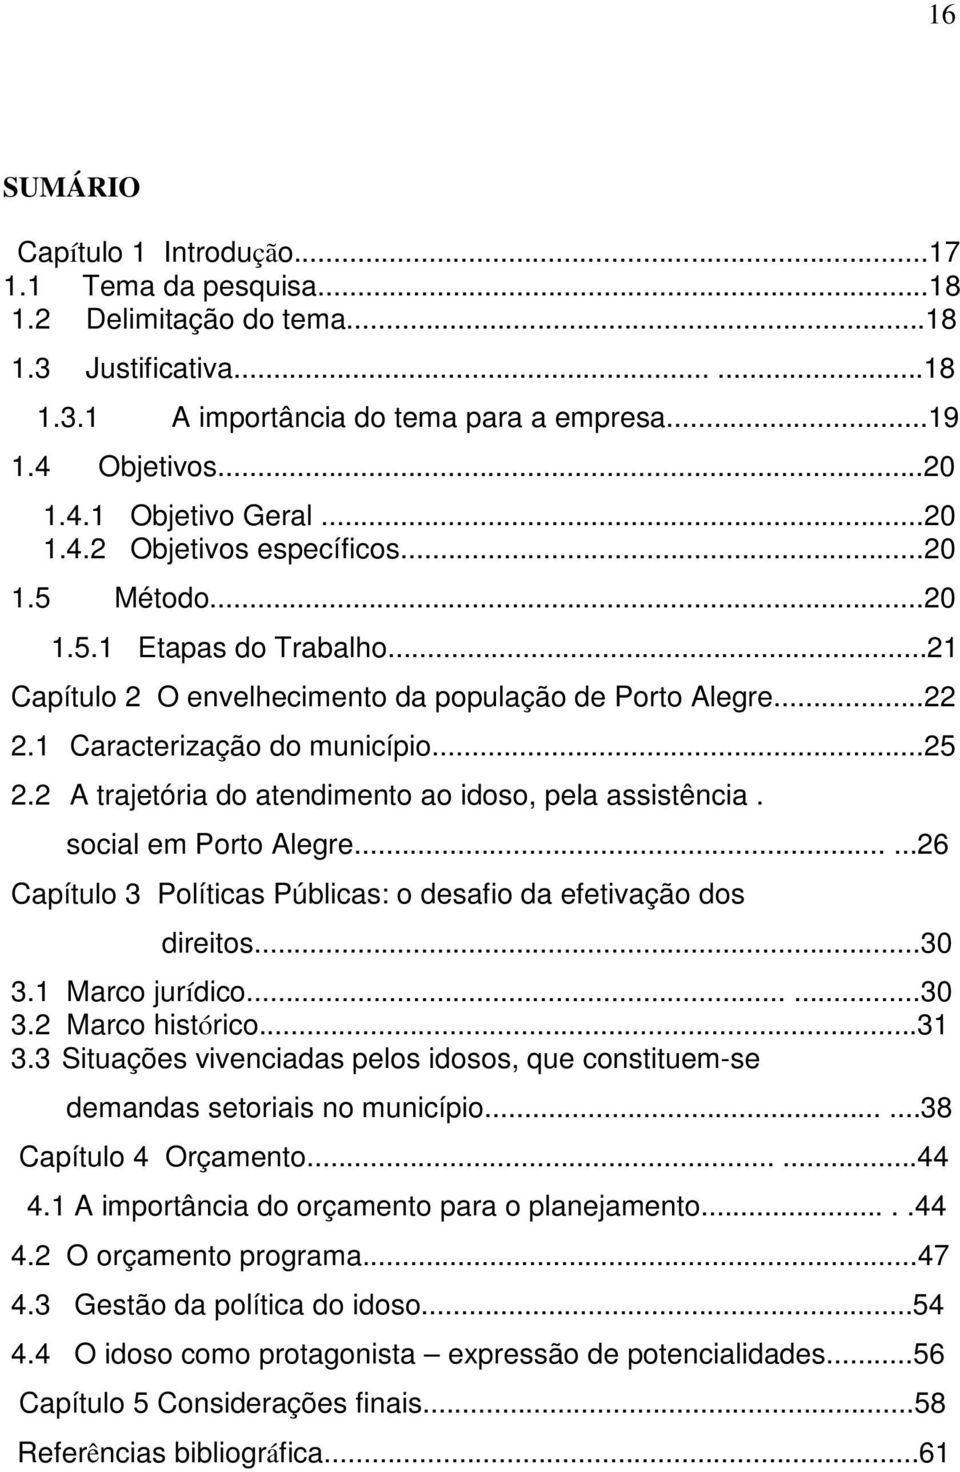 2 A trajetória do atendimento ao idoso, pela assistência. social em Porto Alegre......26 Capítulo 3 Políticas Públicas: o desafio da efetivação dos direitos...30 3.1 Marco jurídico......30 3.2 Marco histórico.